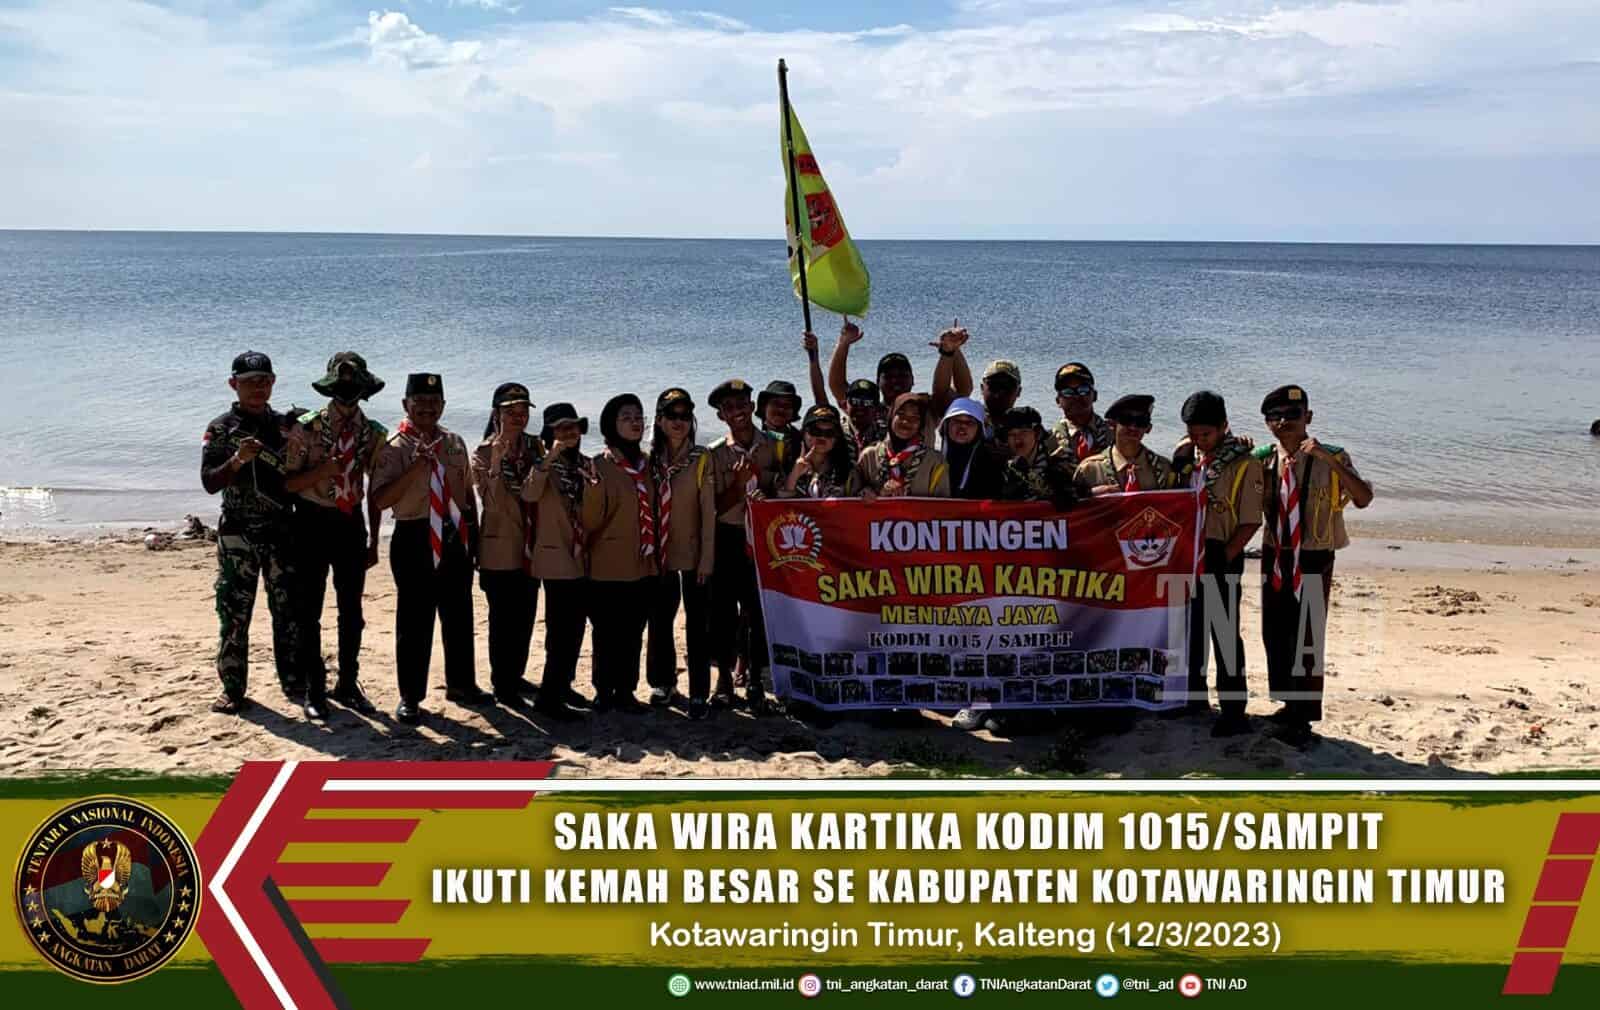 Saka Wira Kartika Kodim 1015/Sampit Ikuti Kemah Besar Se Kabupaten Kotawaringin Timur